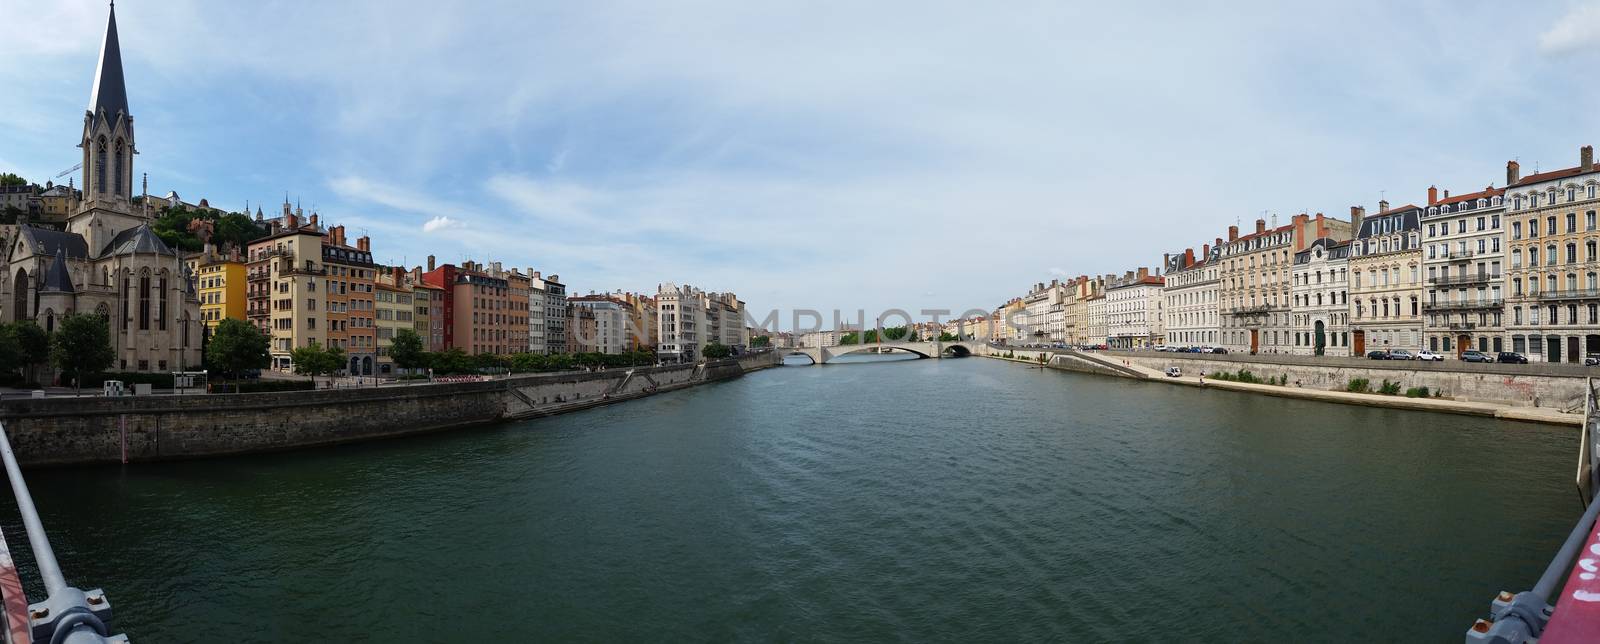 Lyon Panoramic City View by bensib